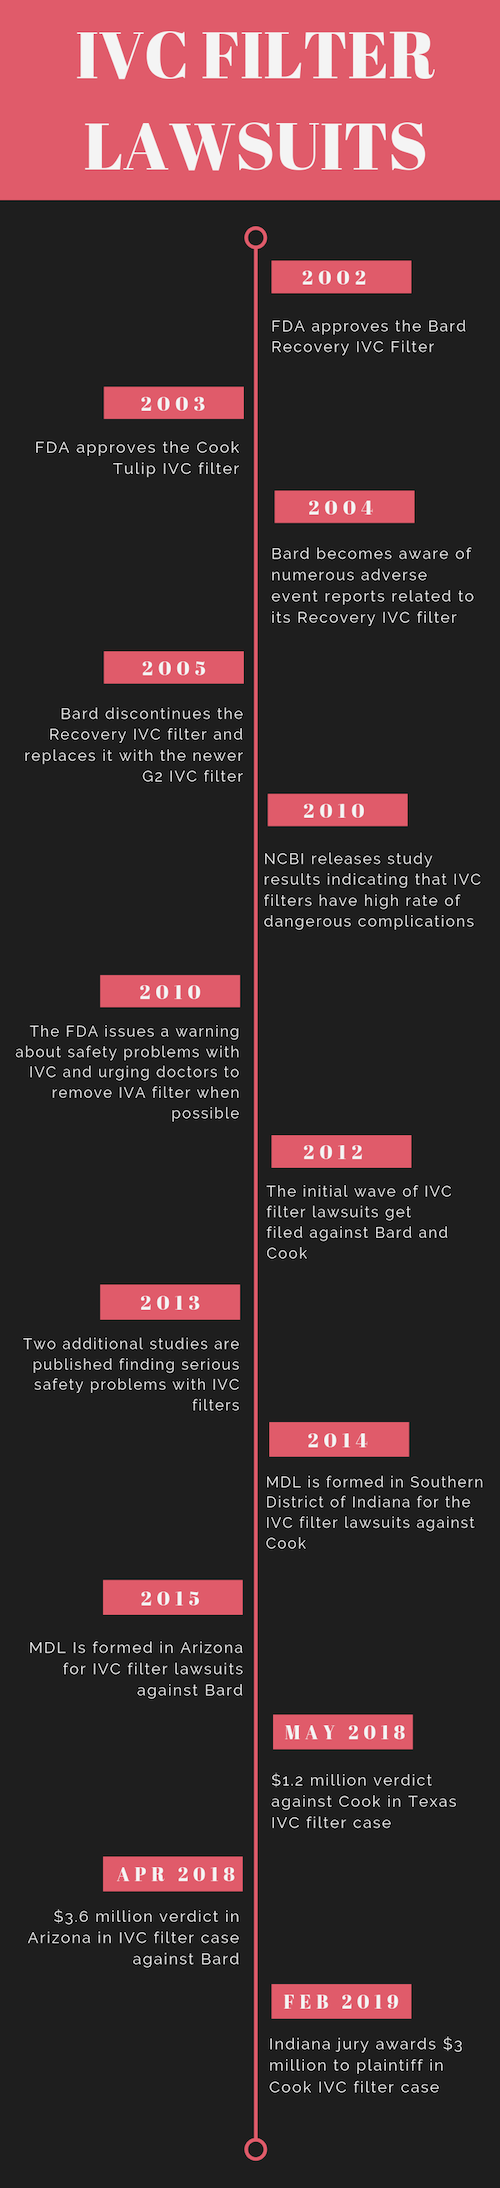 IVC Filter Lawsuits Timeline